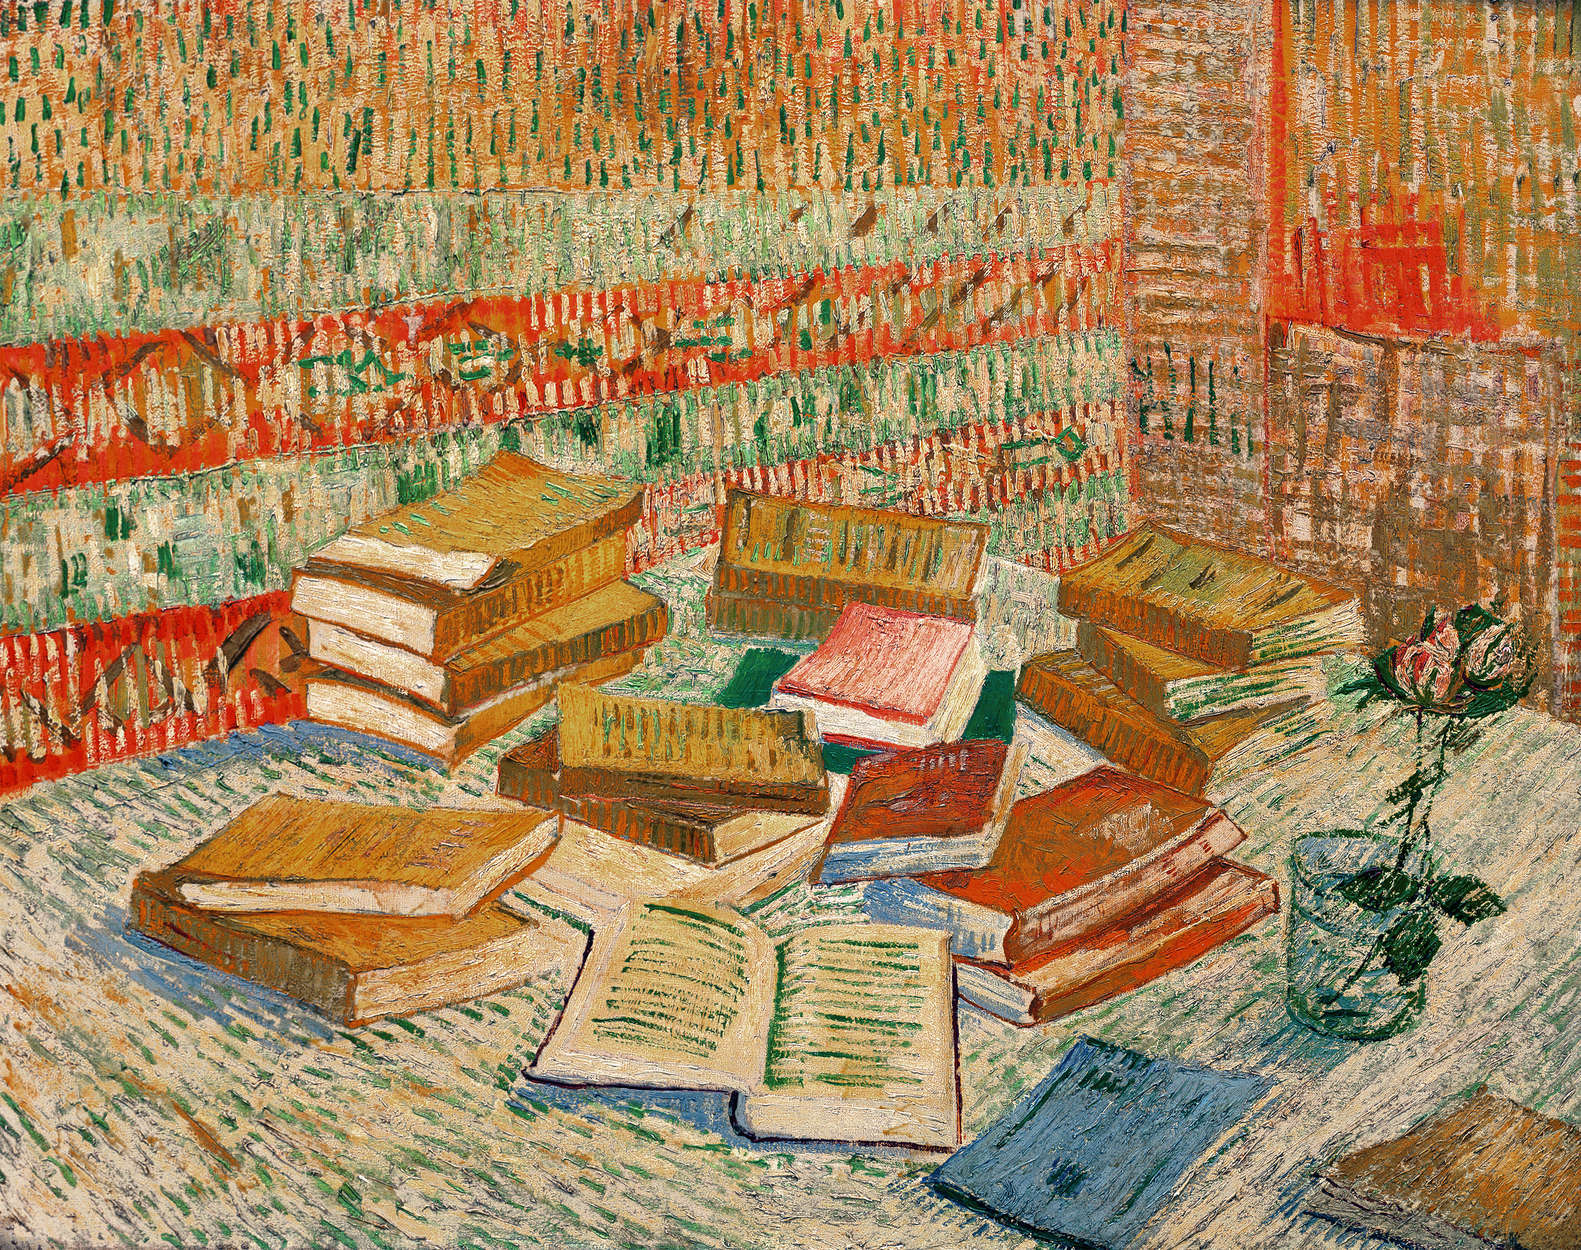             Papier peint panoramique "Les livres jaunes" de Vincent van Gogh
        